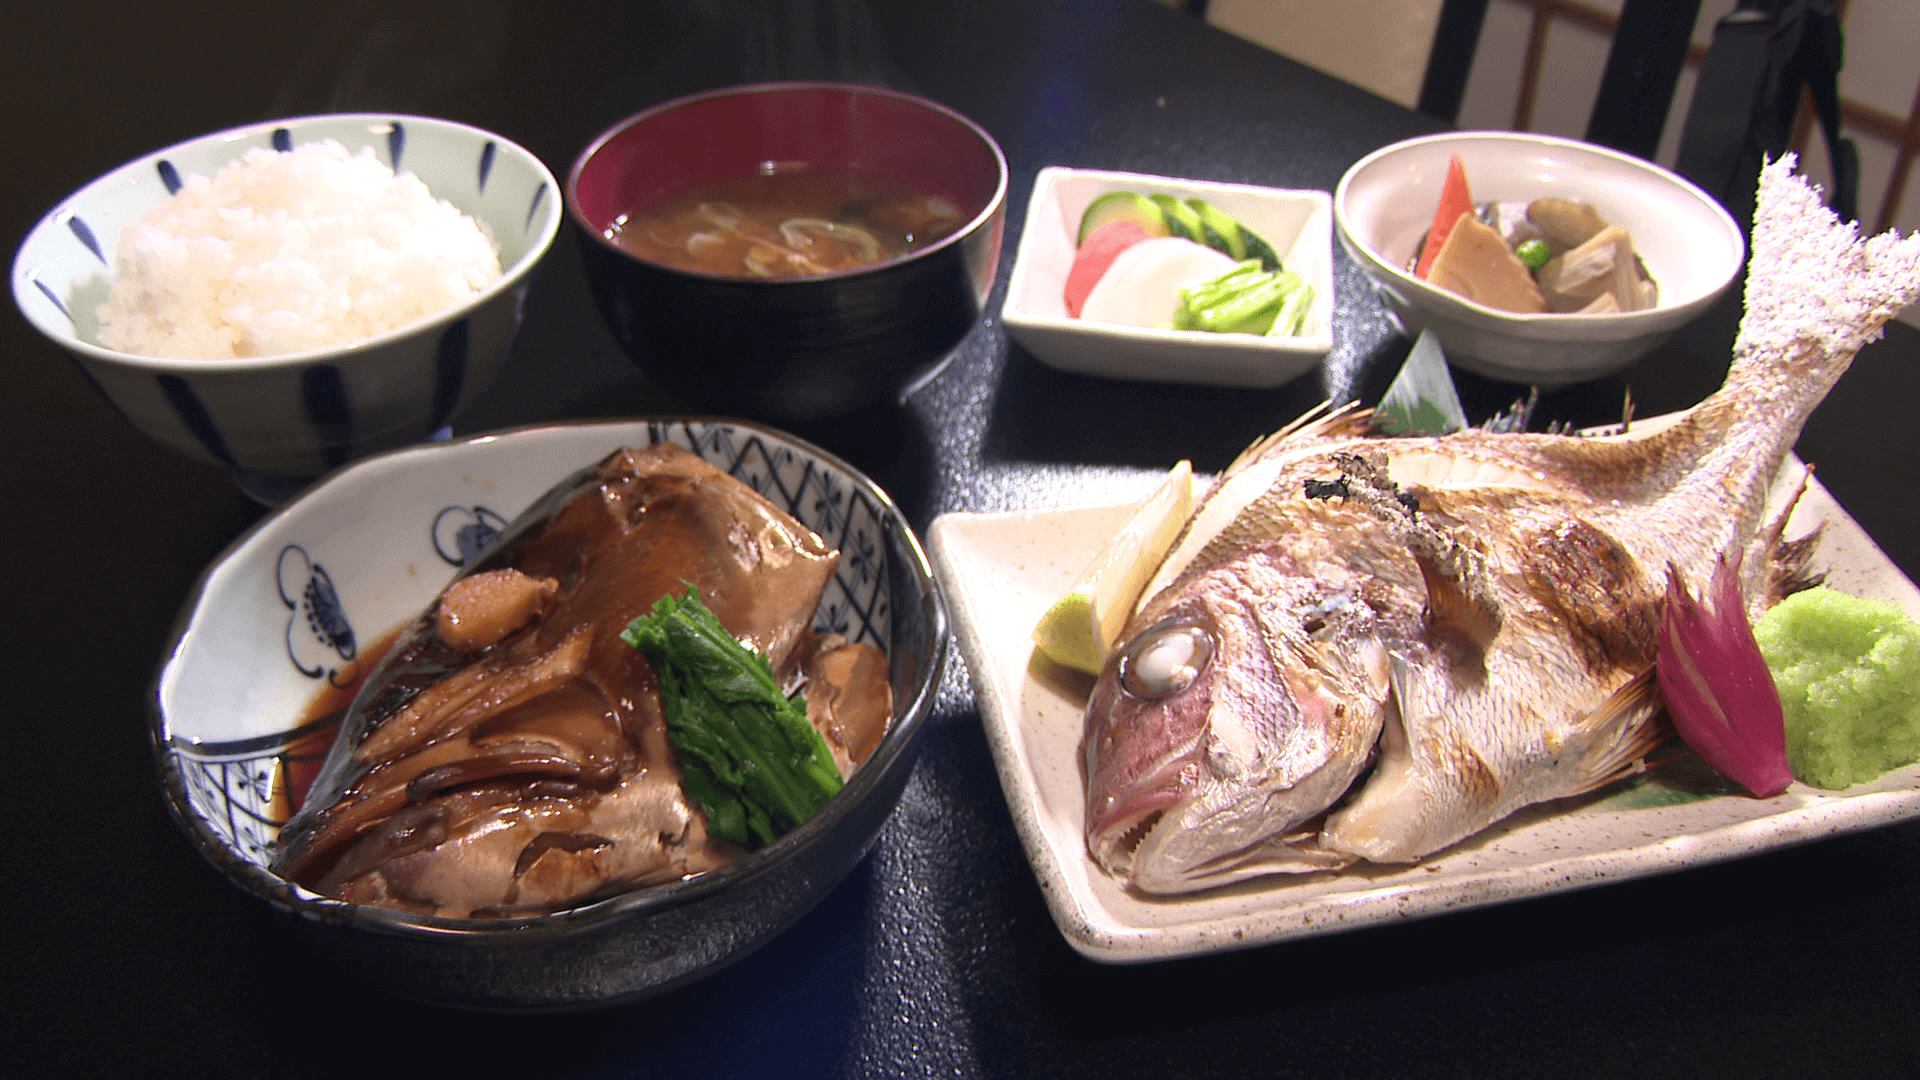 富士見町の「礒五郎」のお好み定食